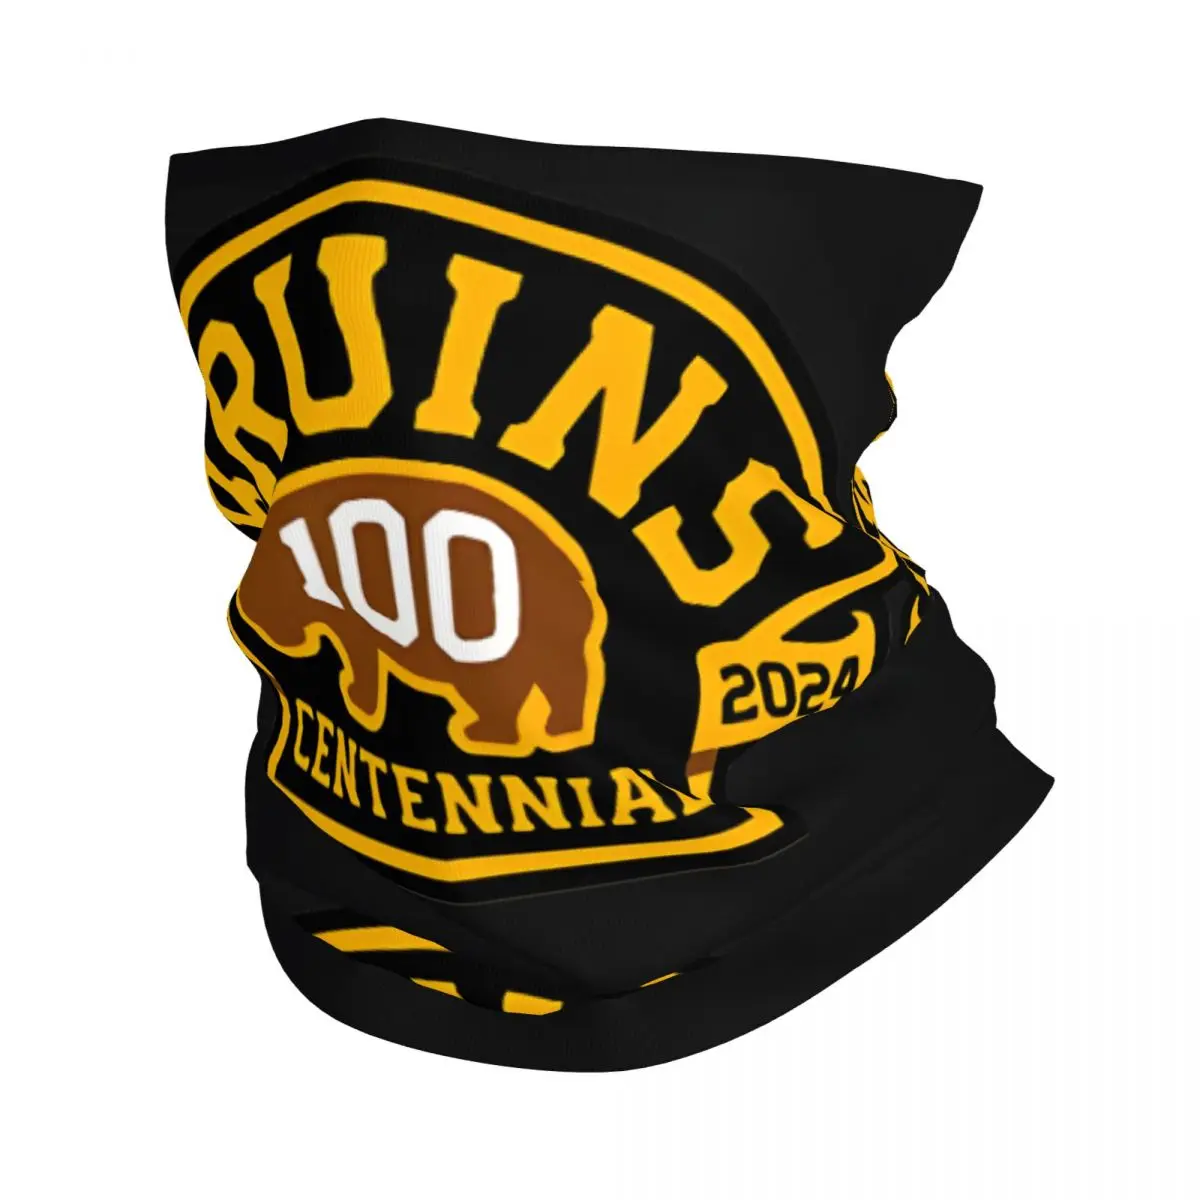 

Бандана Centennial Bruins, шейный Гетр, маска для мотокросса с принтом, велосипедный шарф, походный унисекс, для взрослых, дышащий